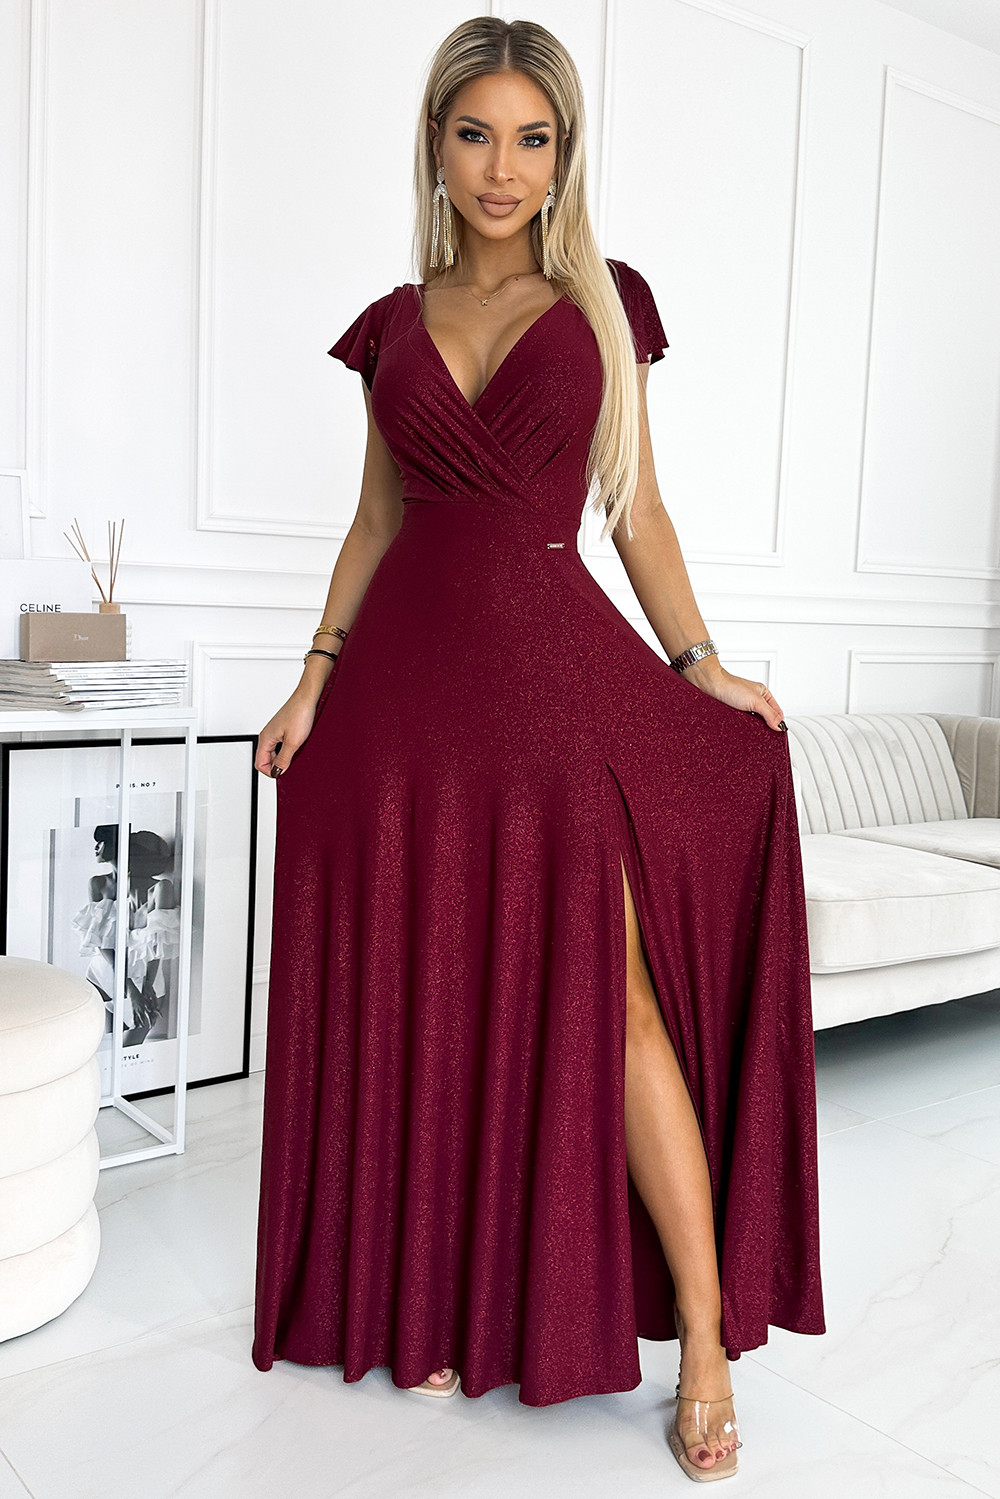 CRYSTAL - Dlouhé lesklé dámské šaty ve vínové bordó barvě s výstřihem 411-8 XXXL